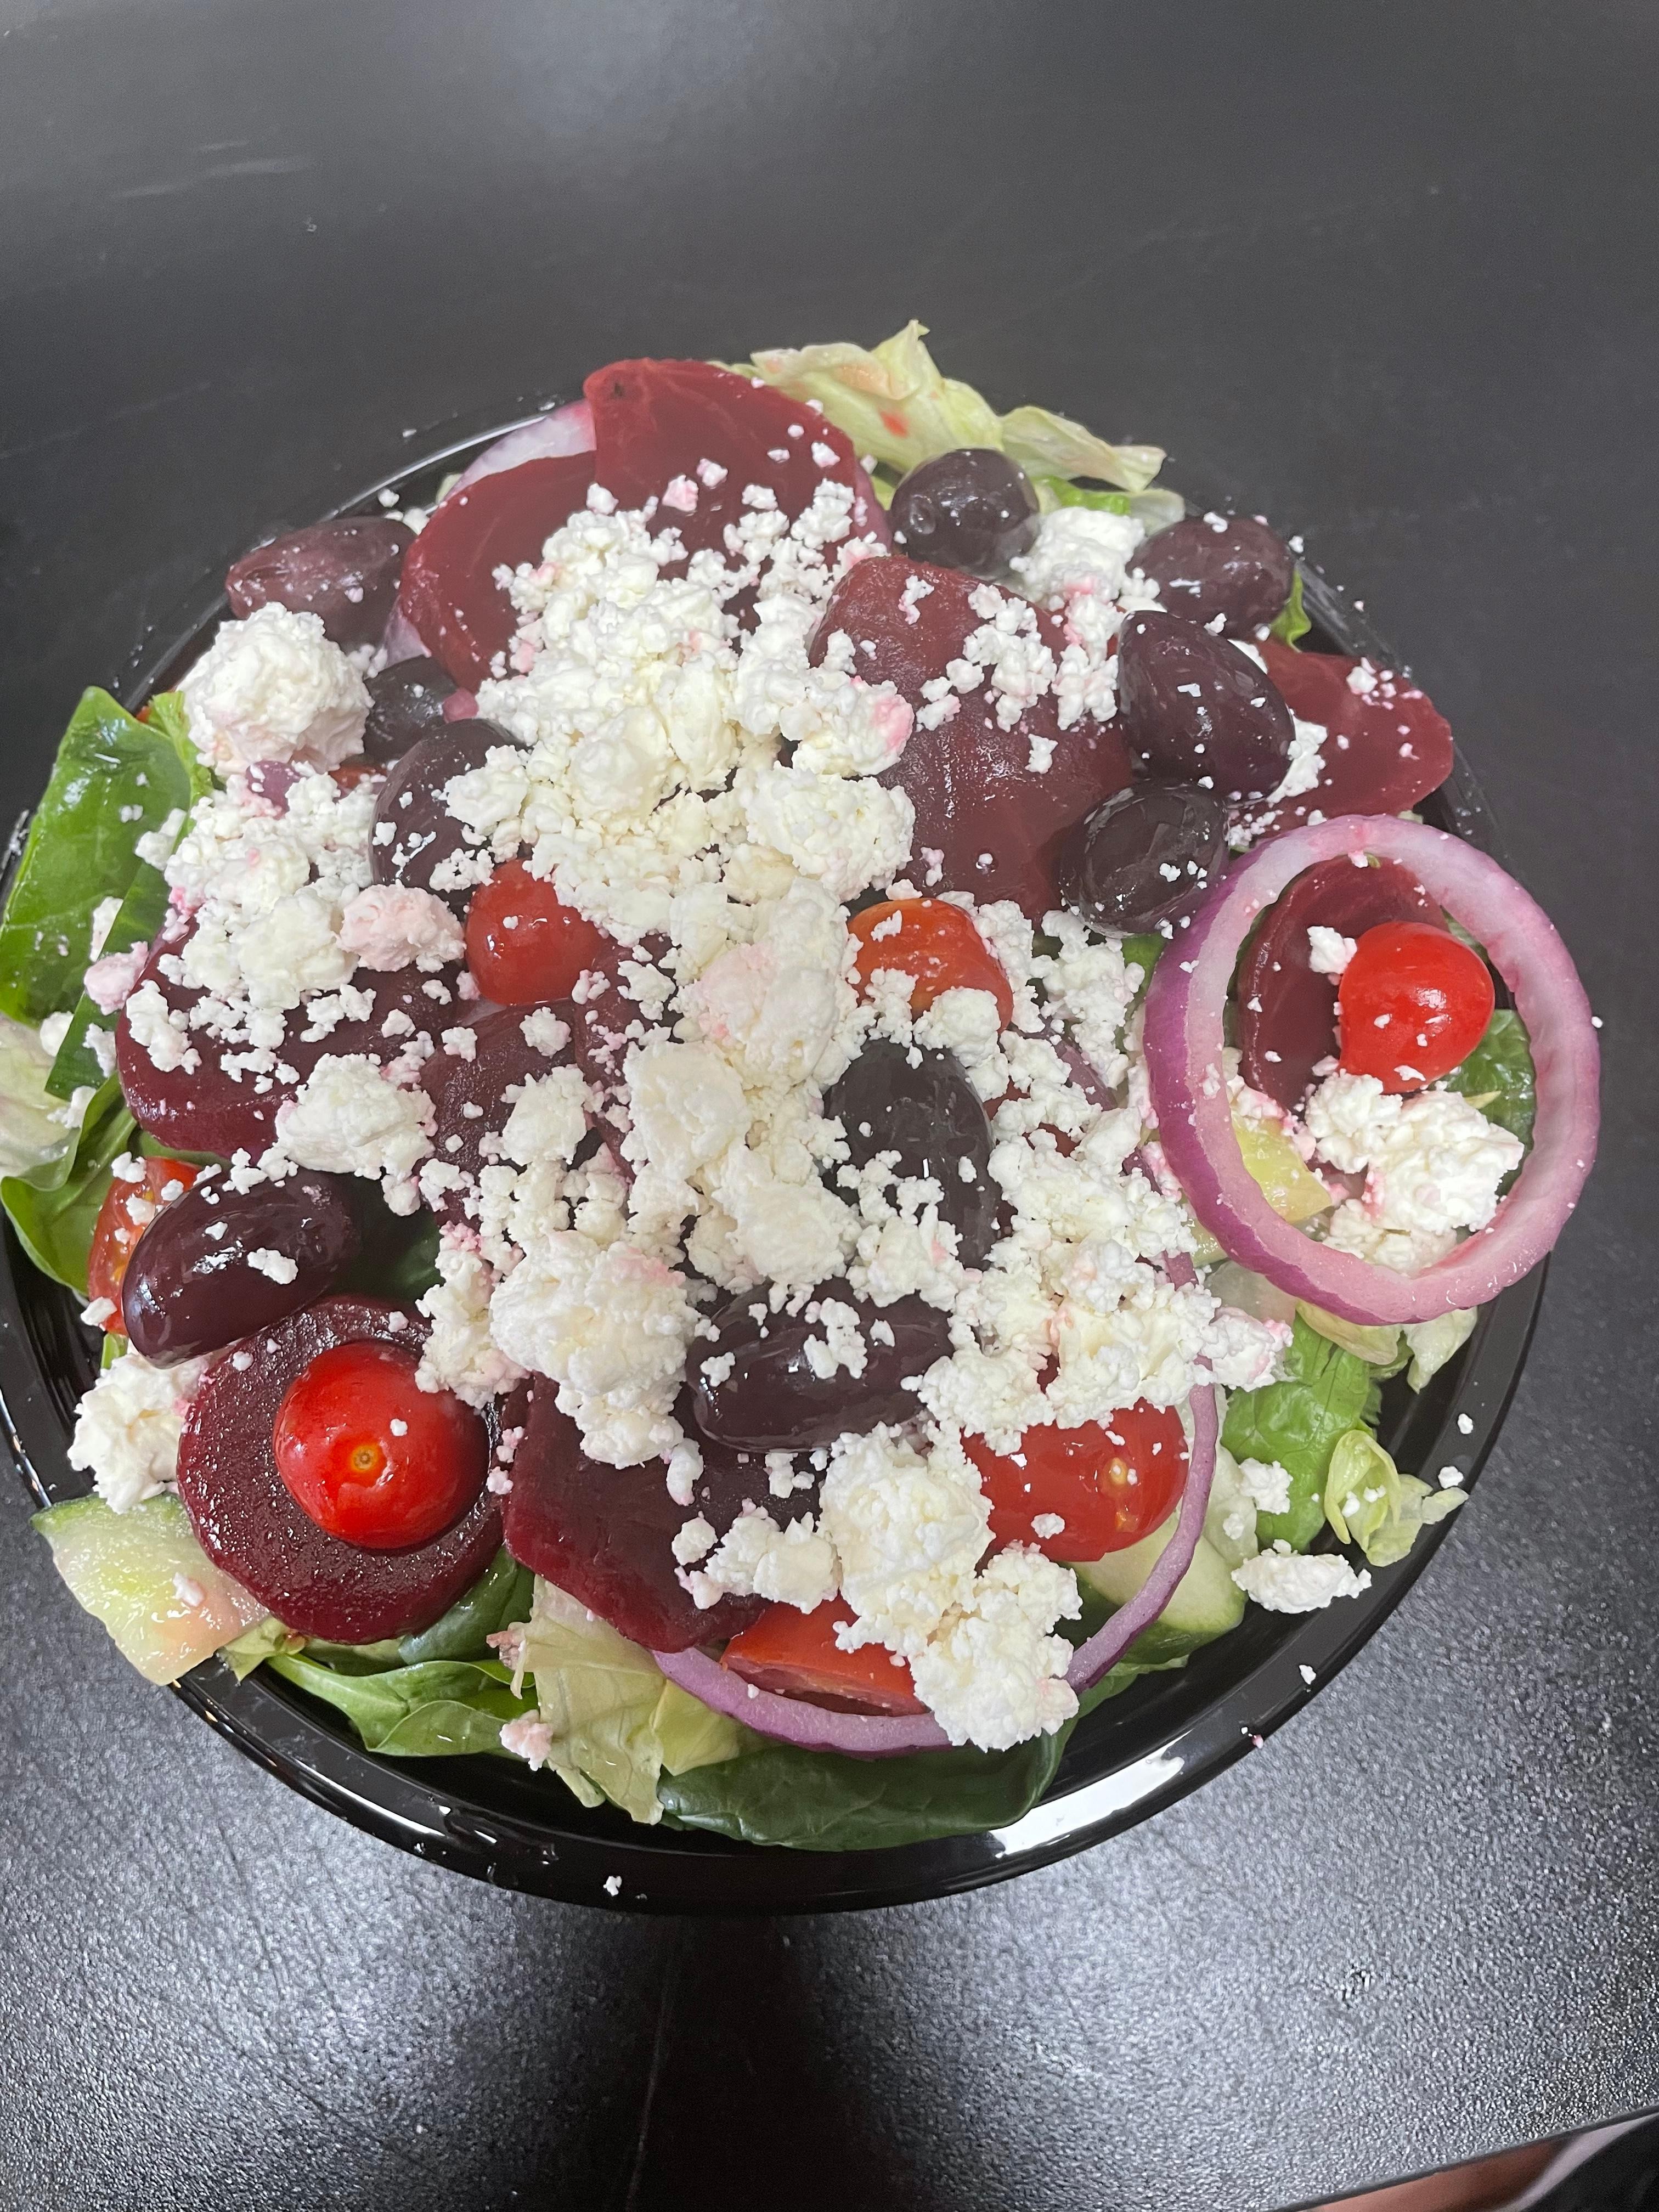 Greek Salad - Small